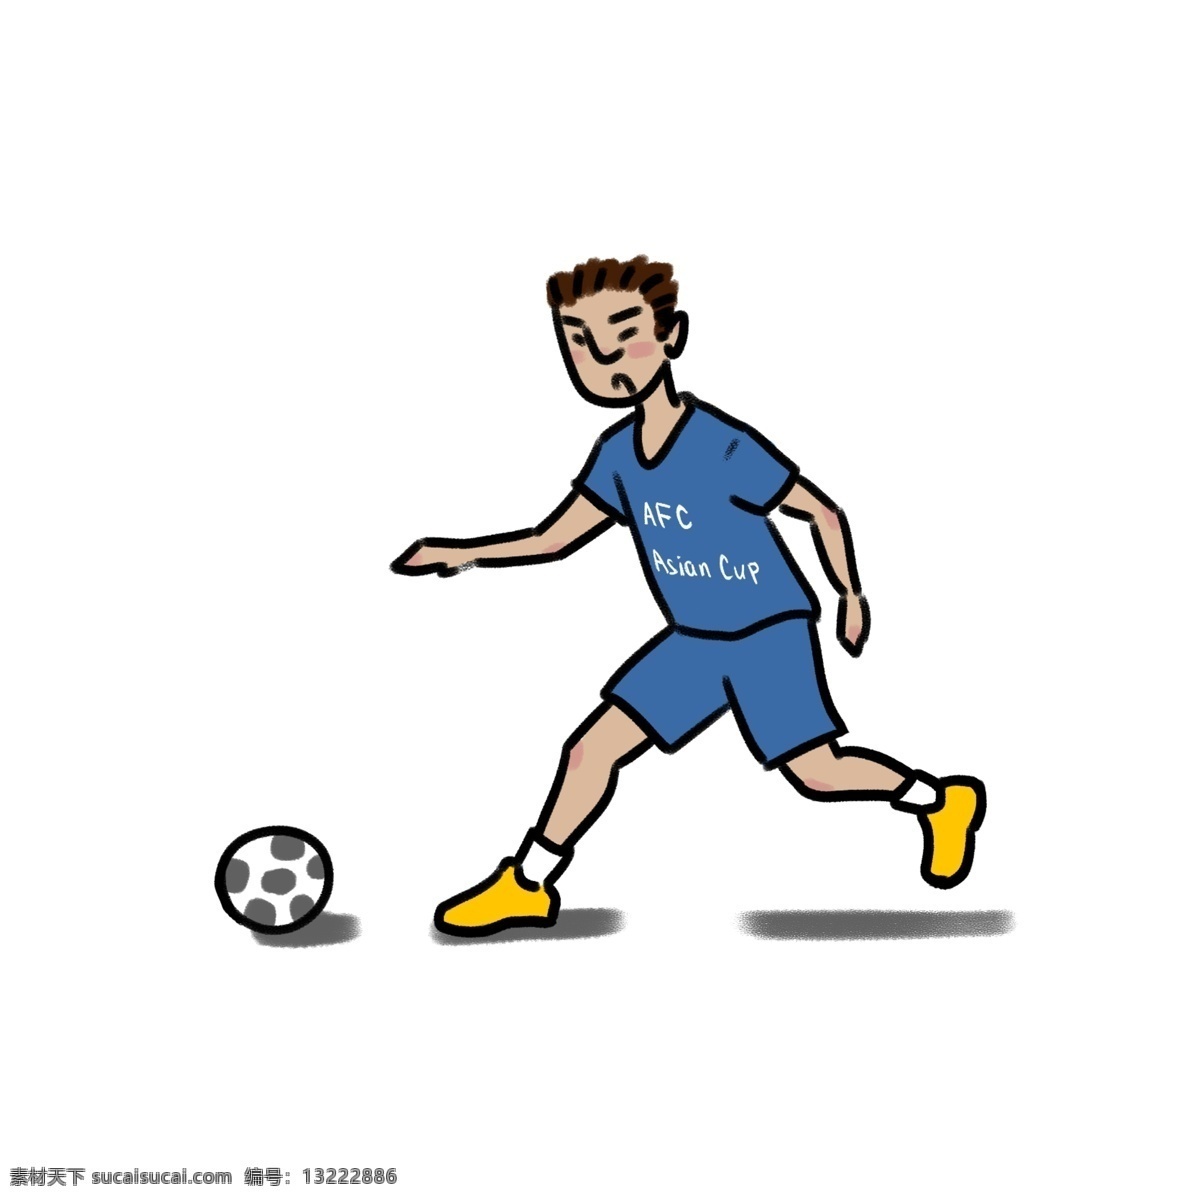 踢 足球 小人 亚洲杯 简 笔画 运动员 商用 运动 简笔画 儿童画 踢足球